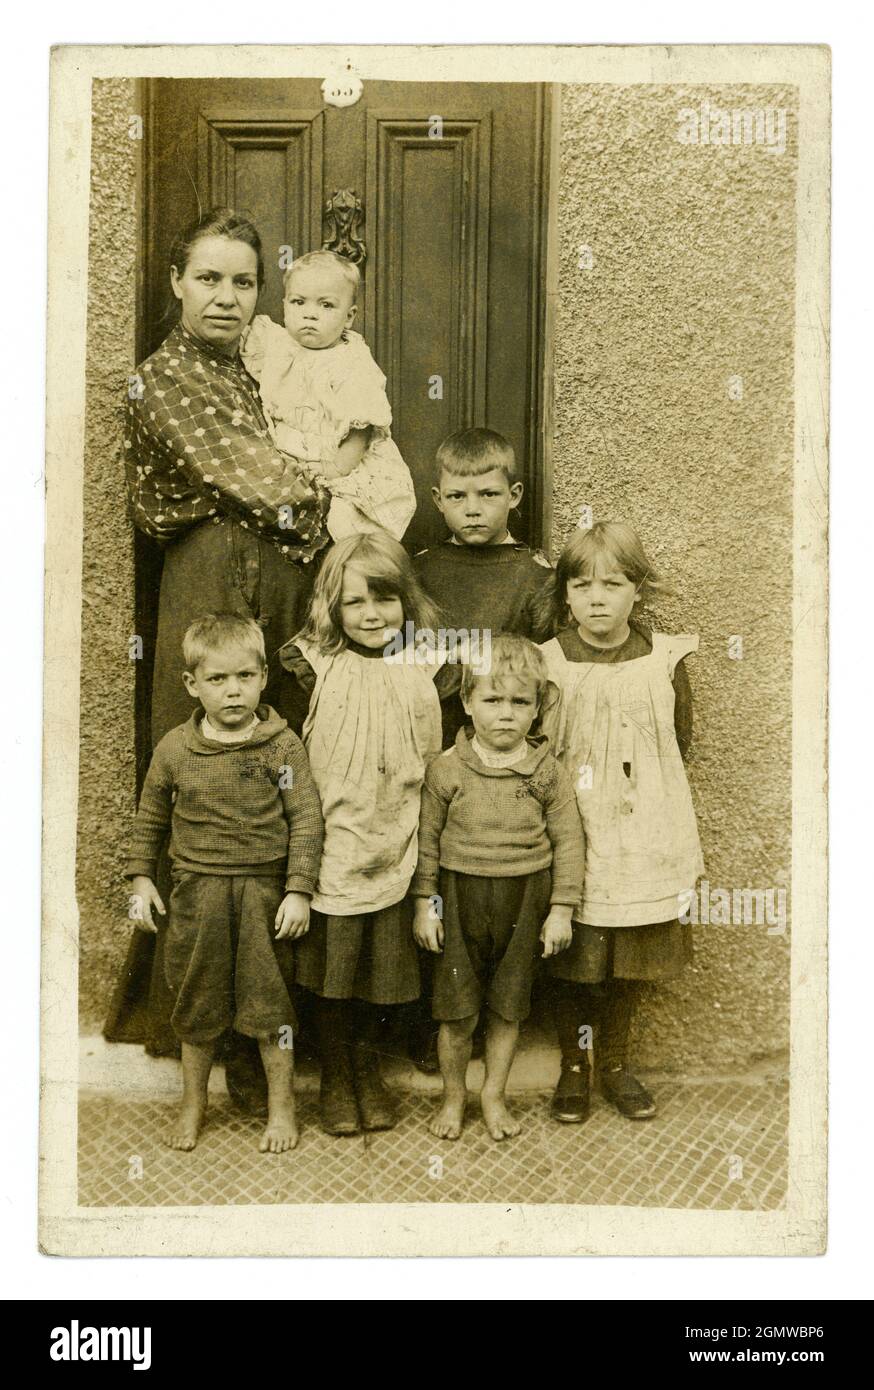 Originale, molto chiaro, epoca edoardiana ritratto cartolina di madre povera classe operaia tipica con una grande famiglia di sei bambini seri-osservanti e un bambino nelle sue braccia, alcuni bambini sono a piedi nudi, indossando grubby, vestiti strappati. Le ragazze sono vestite di pinafores, ragazzi che indossano tatty jumpers, a due passi, dallo studio di J.H. Ormerod, Seacombe, Wallasey, The Wirral, Inghilterra, Regno Unito circa 1907 Foto Stock